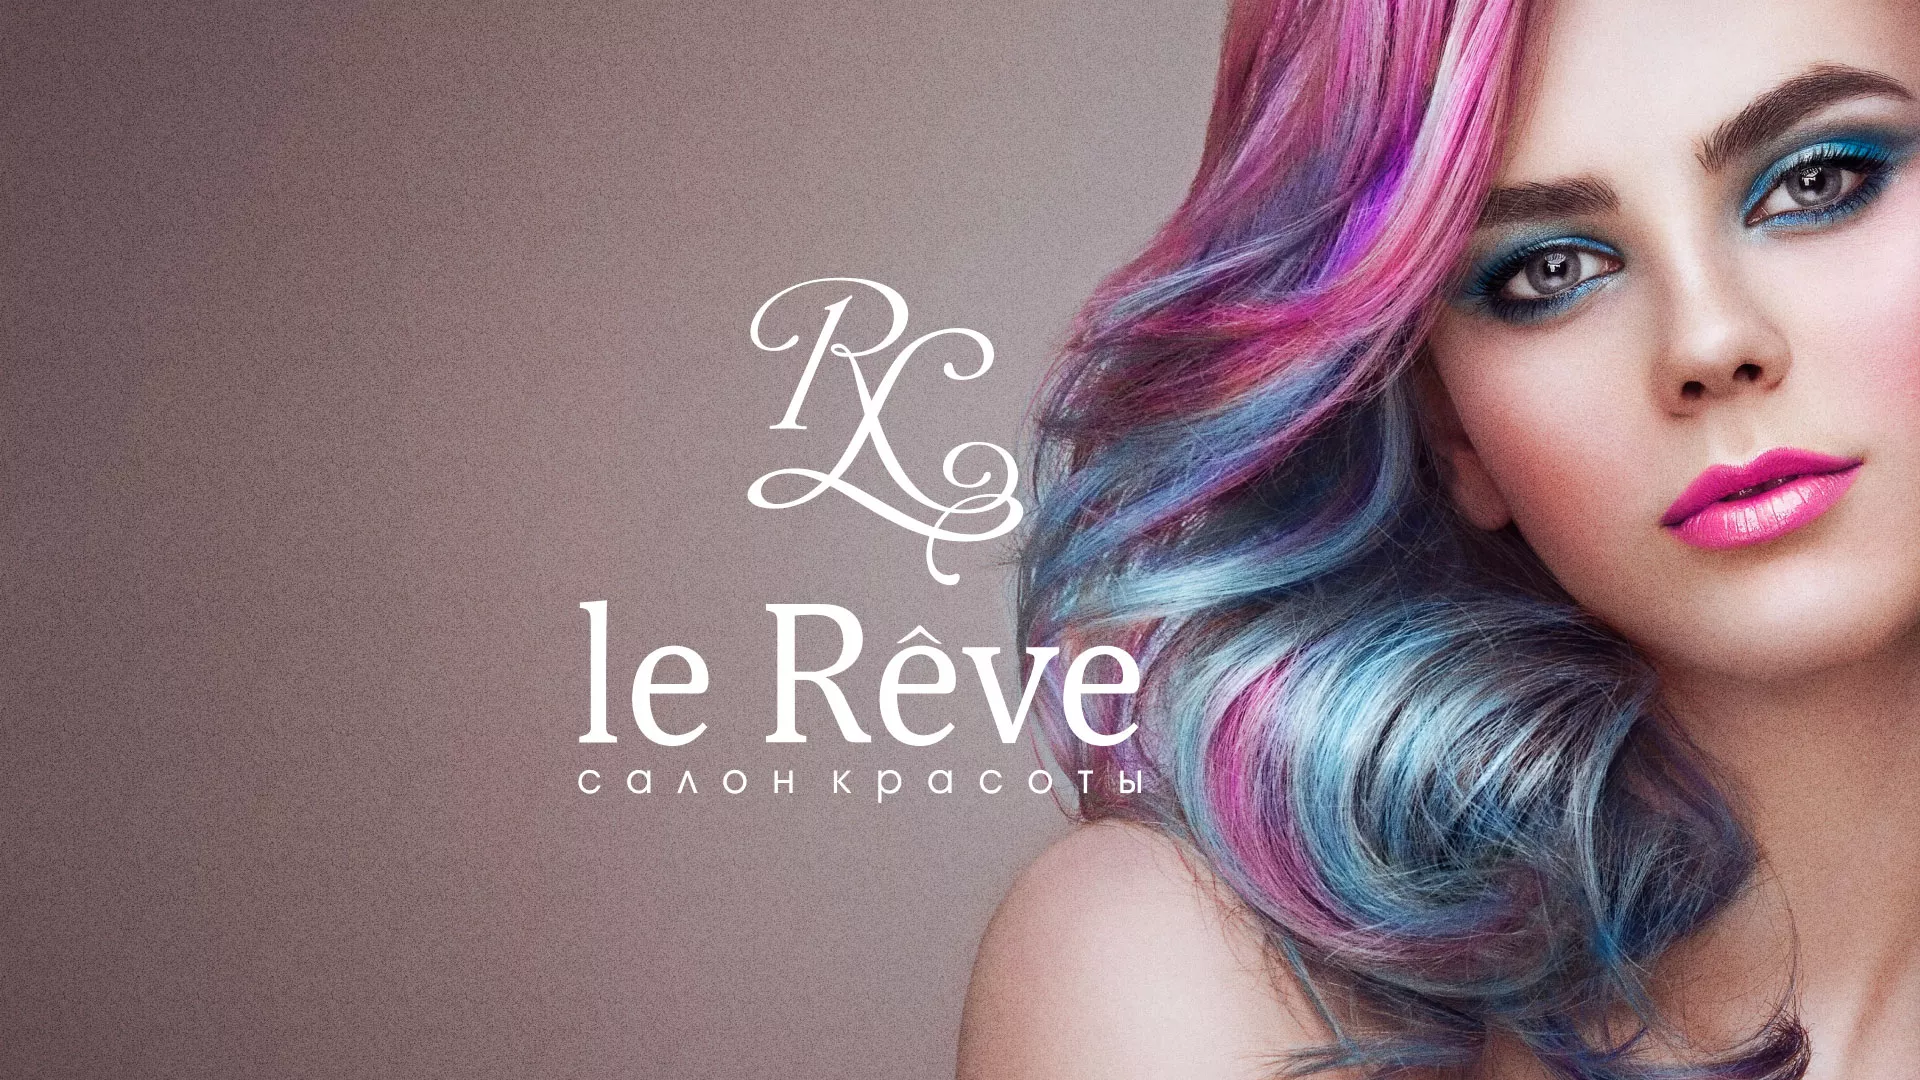 Создание сайта для салона красоты «Le Reve» в Моршанске